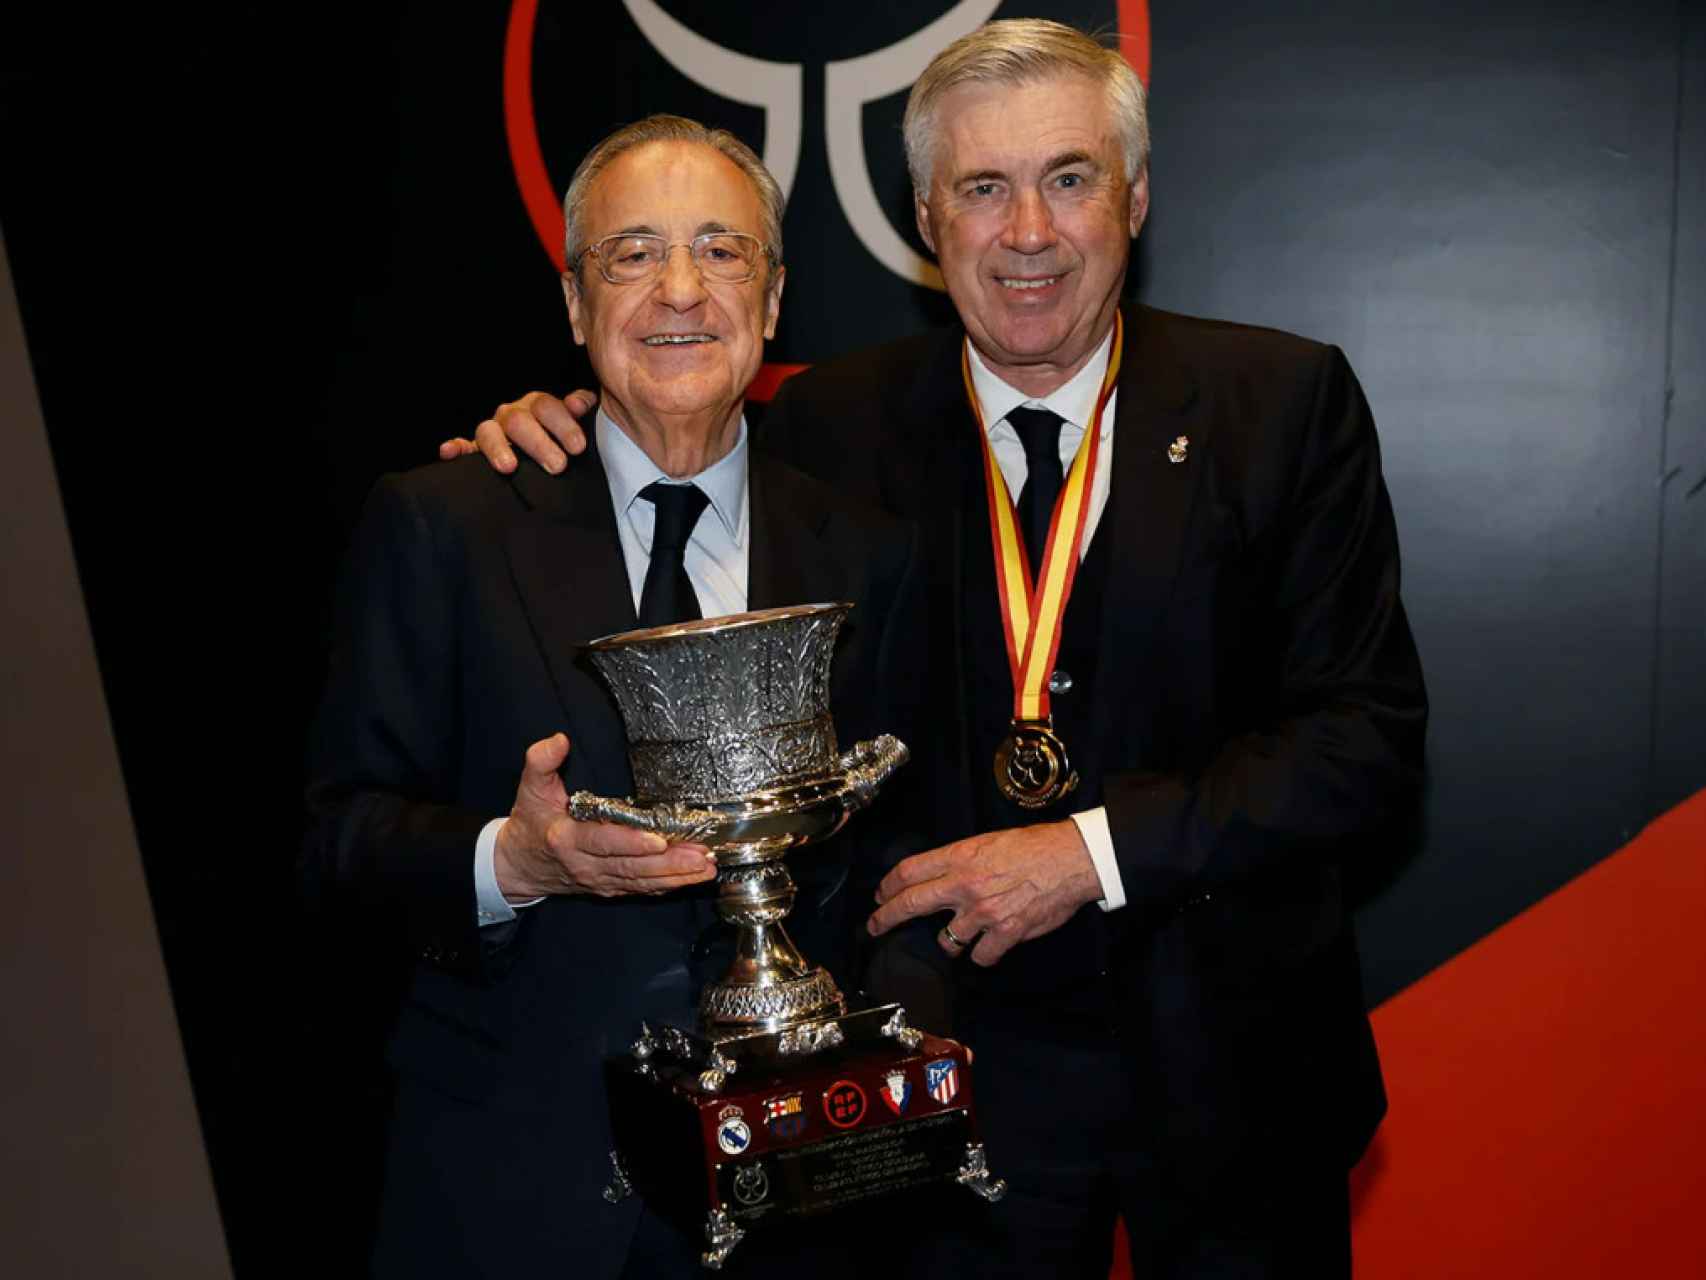 Florentino Pérez, presidente del Real Madrid, y Carlo Ancelotti, entrenador del Real Madrid.